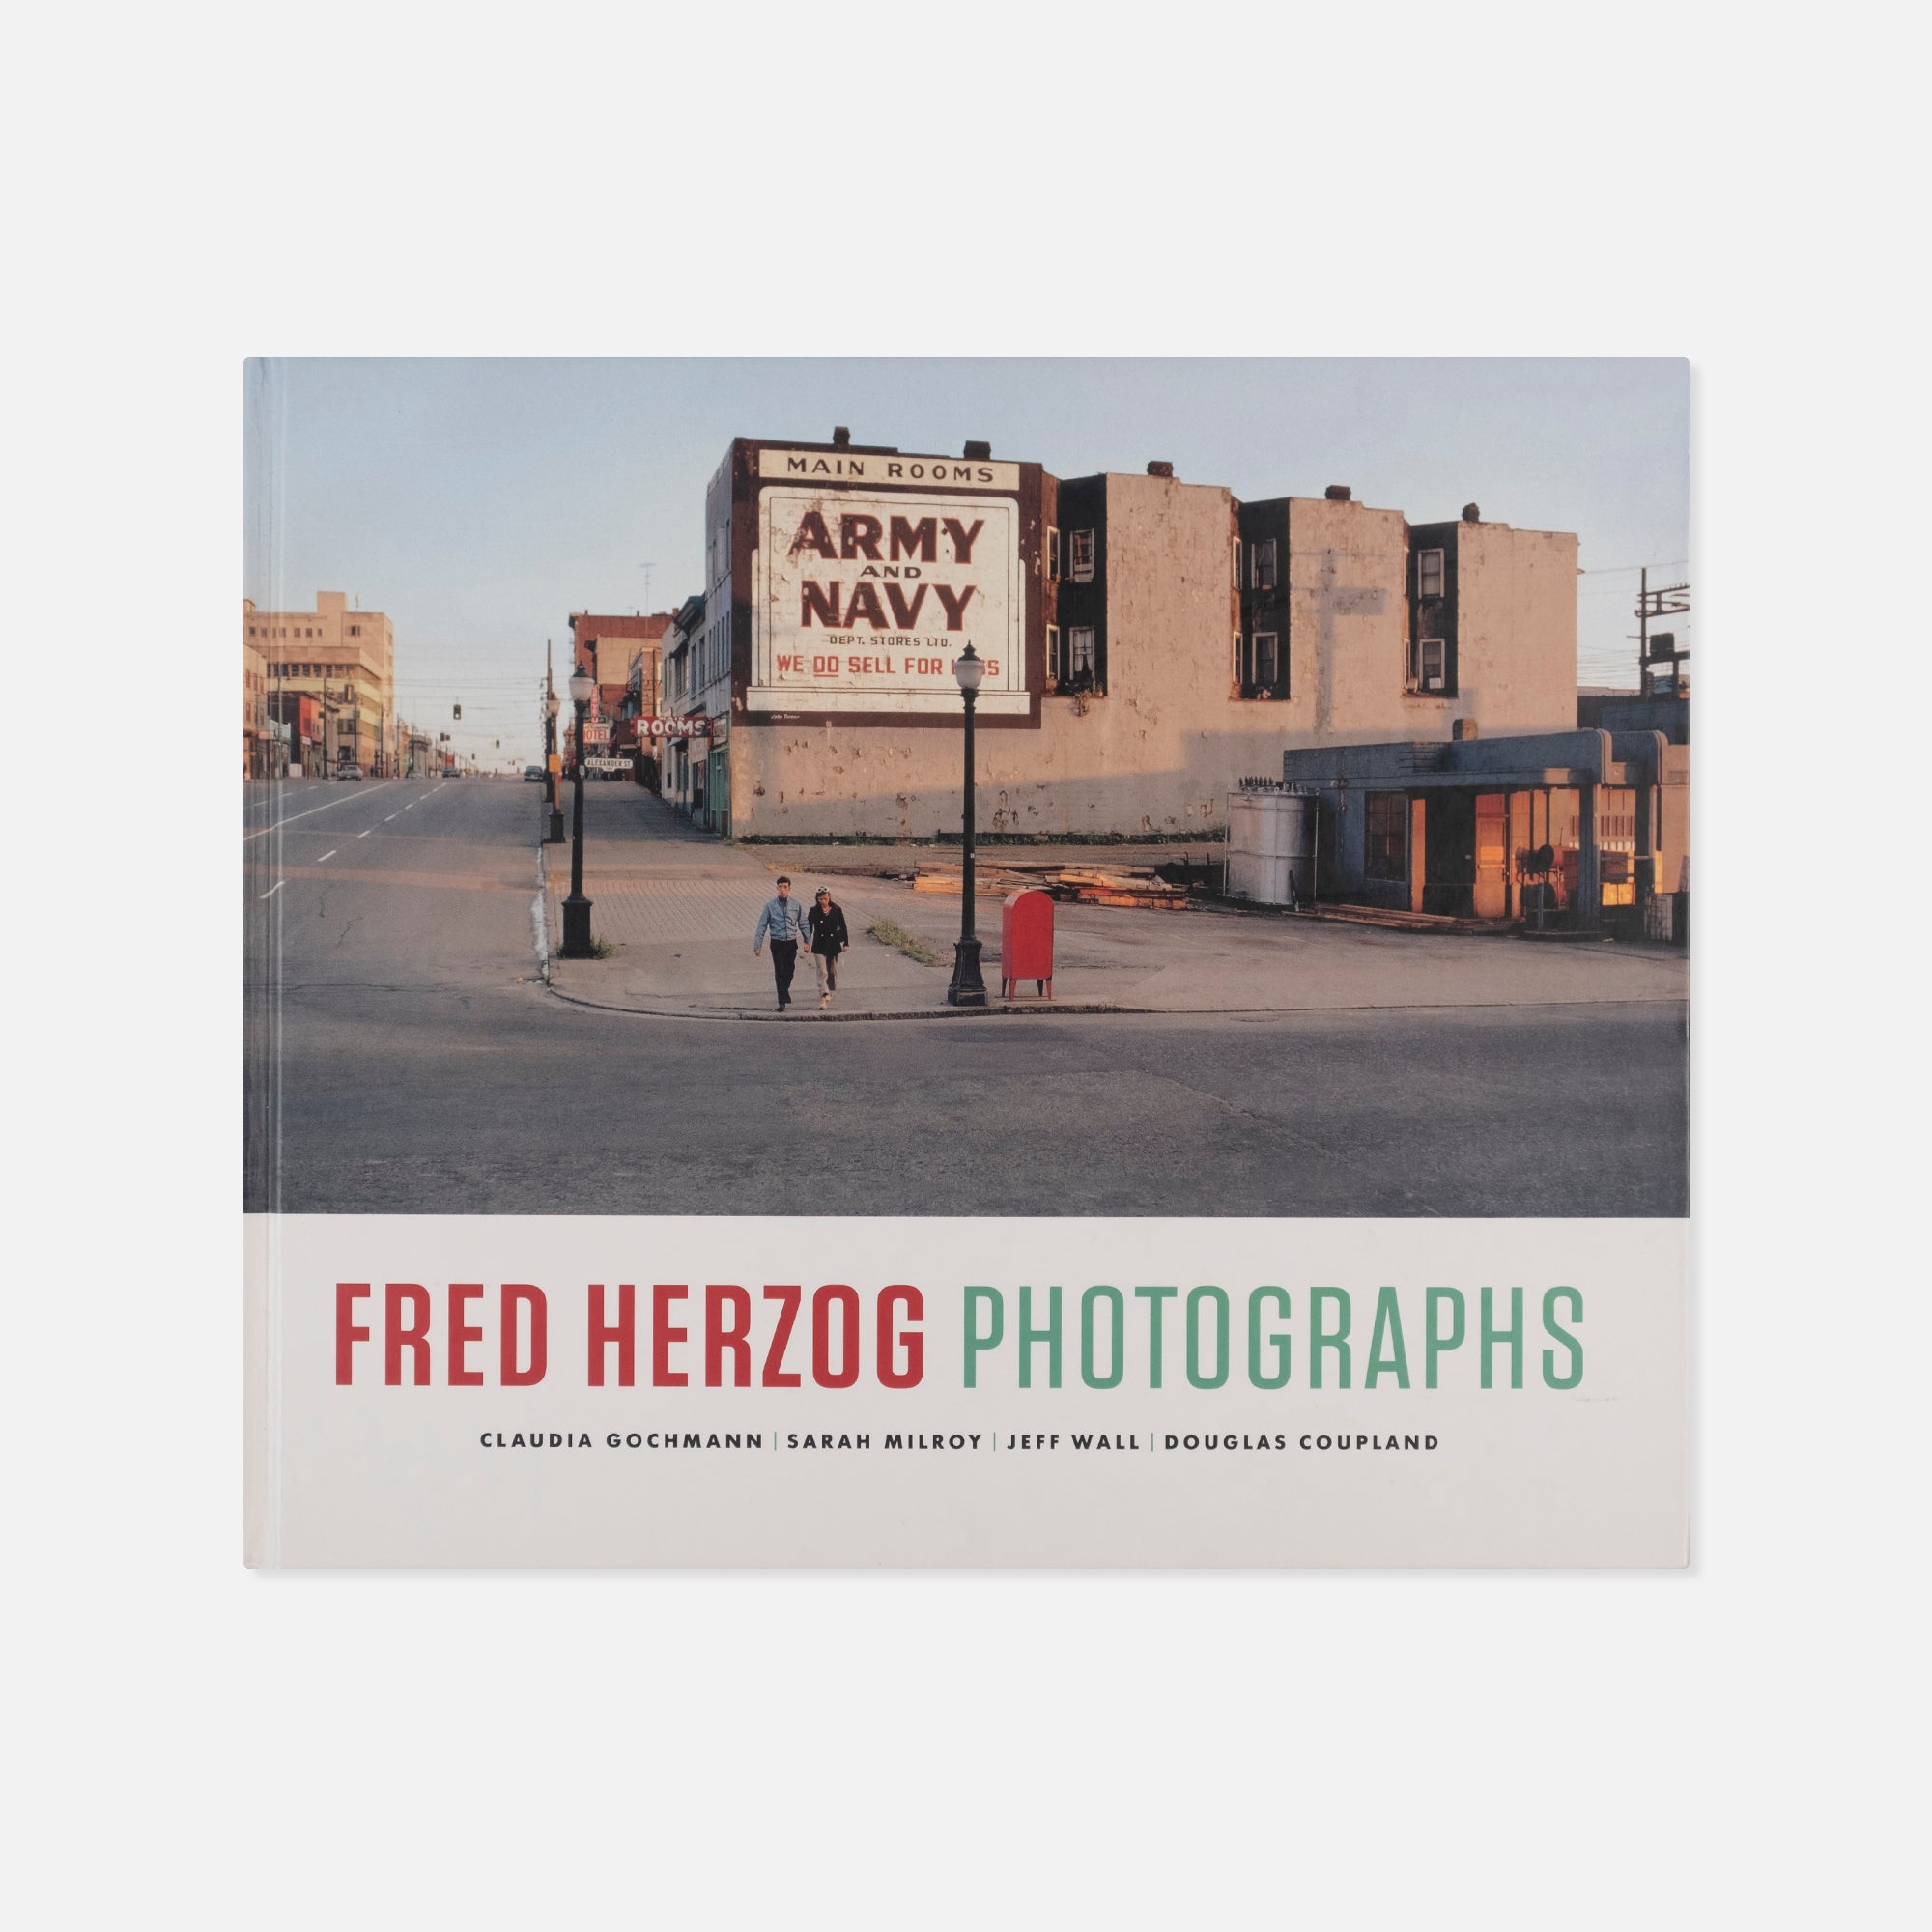 Fred Herzog — Photographs